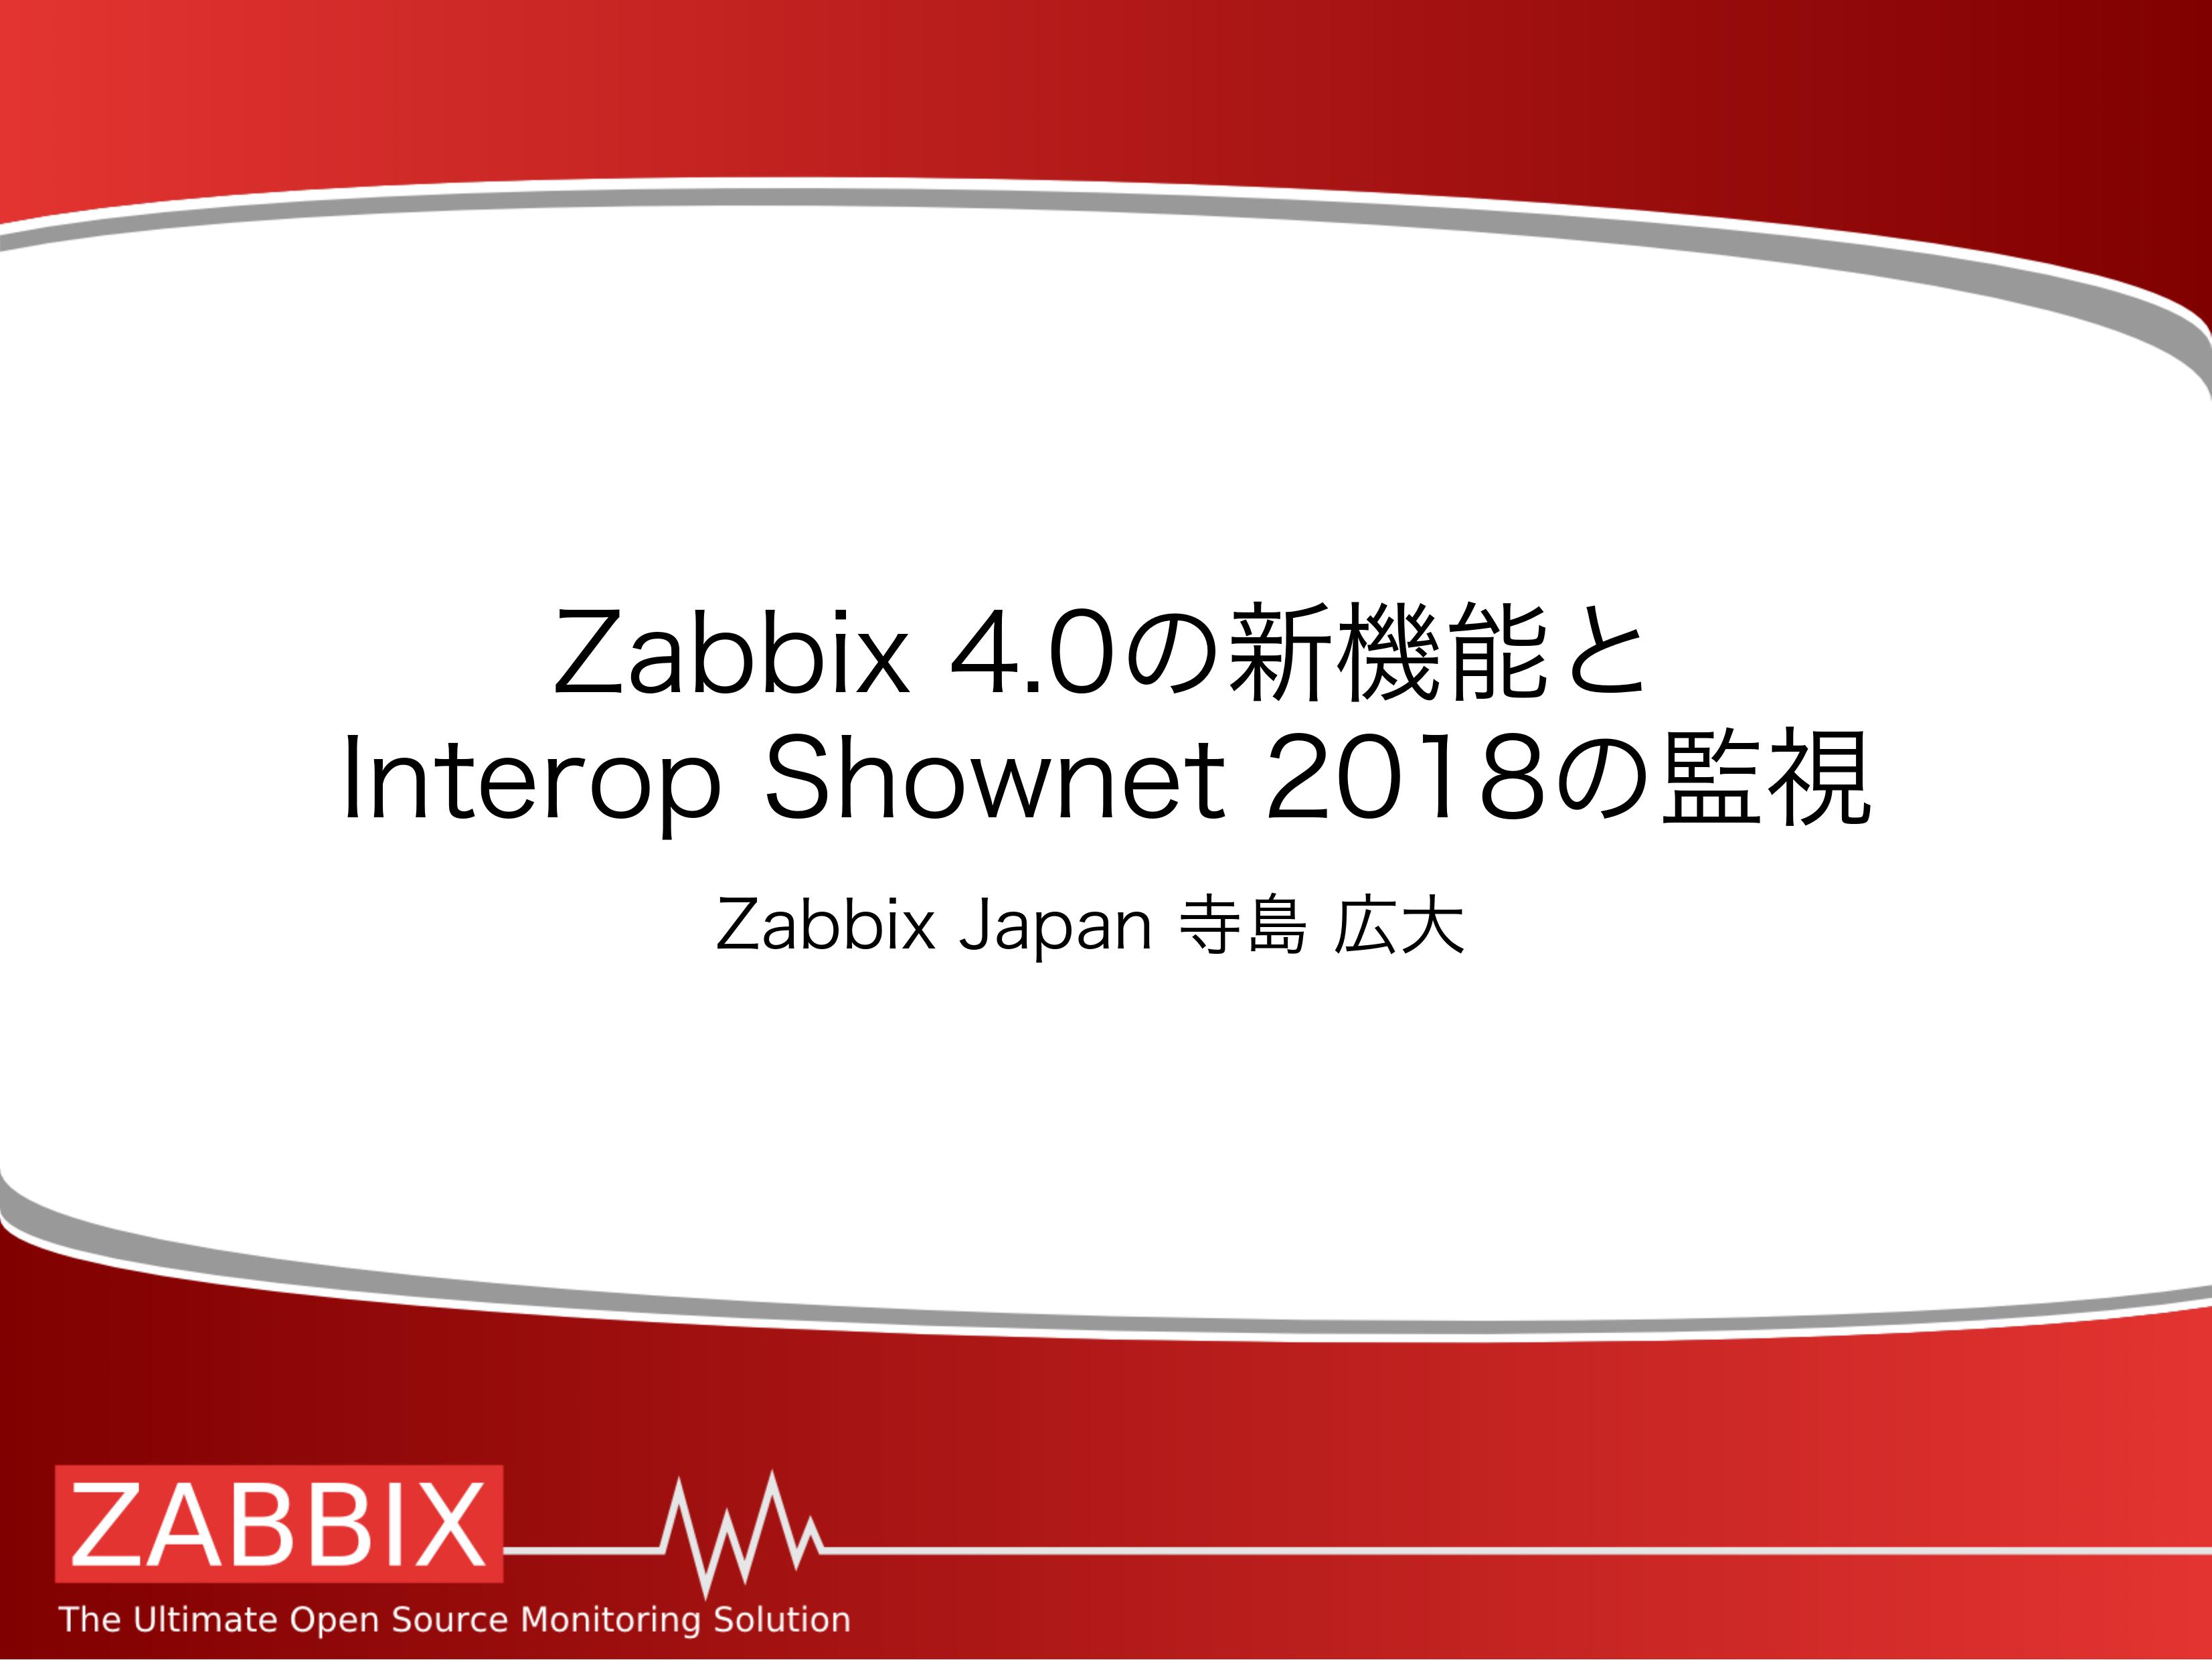 【セミナーレポート】Zabbix 4.0機能紹介(2/2)